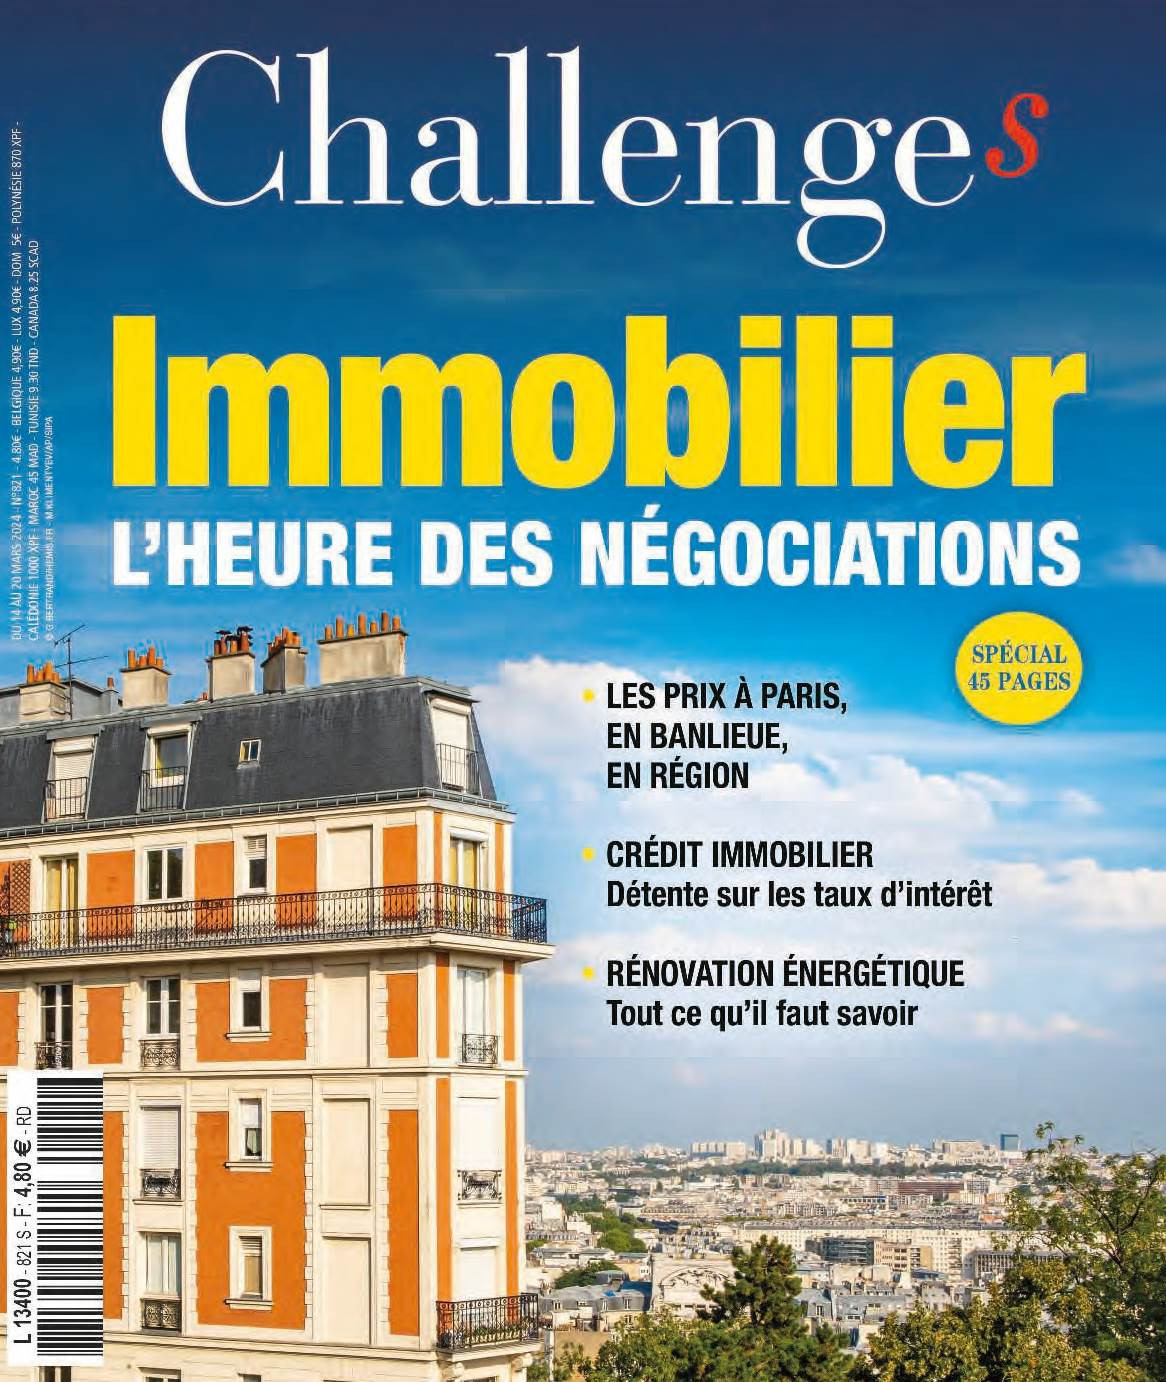 "Challenges Immobilier : Un palier en dessous" - Challenges Immobilier